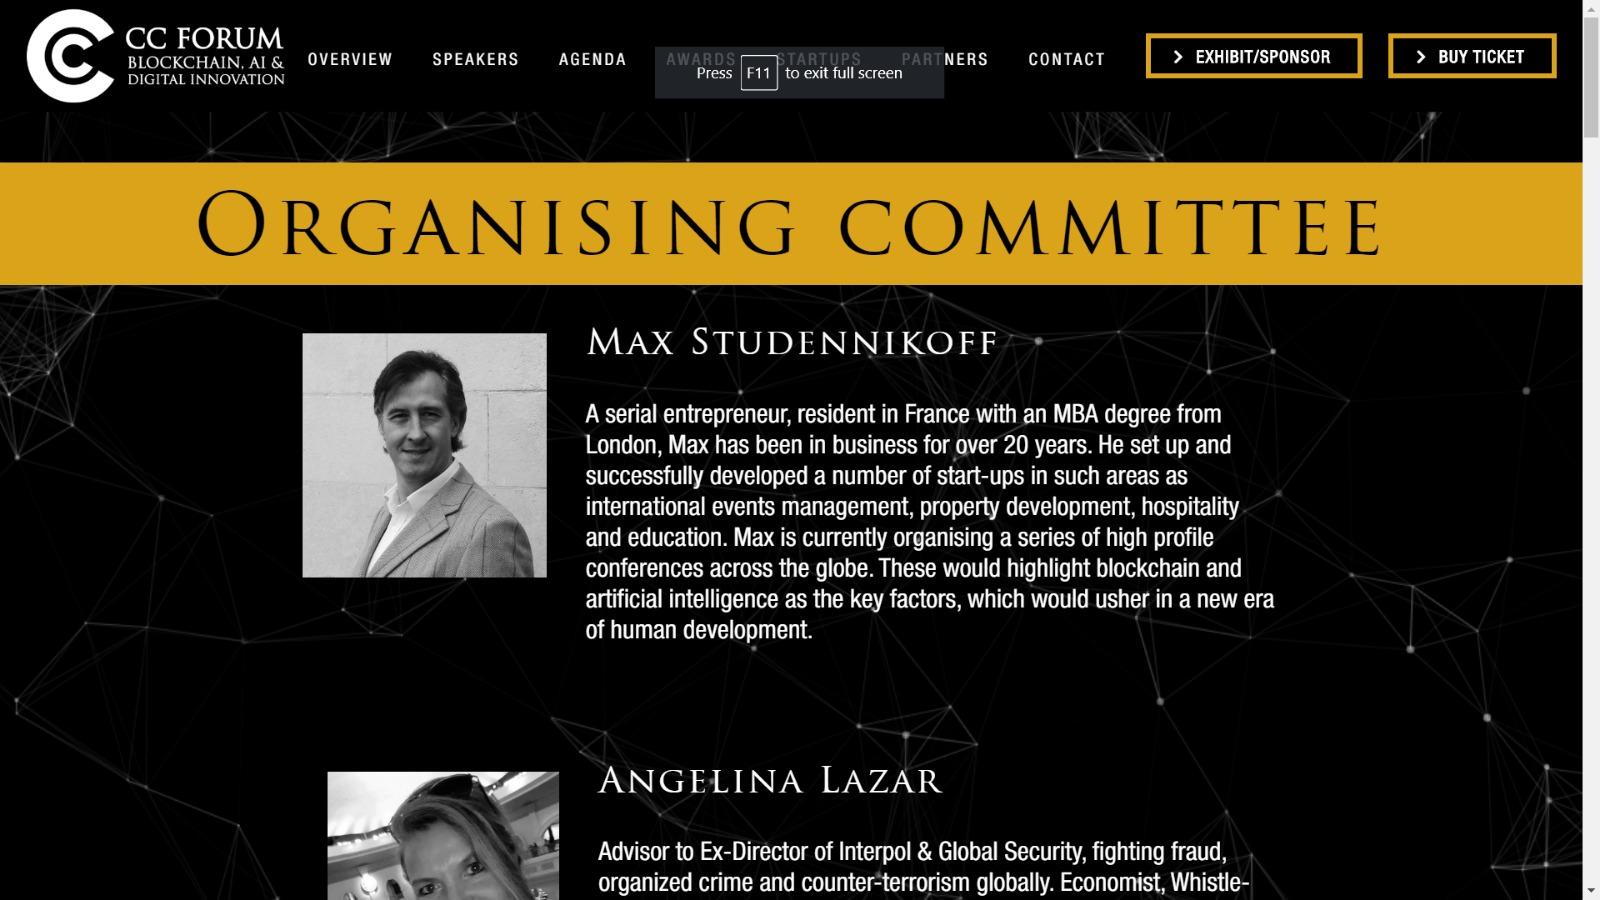 Max Studennikoff on CC Forum website